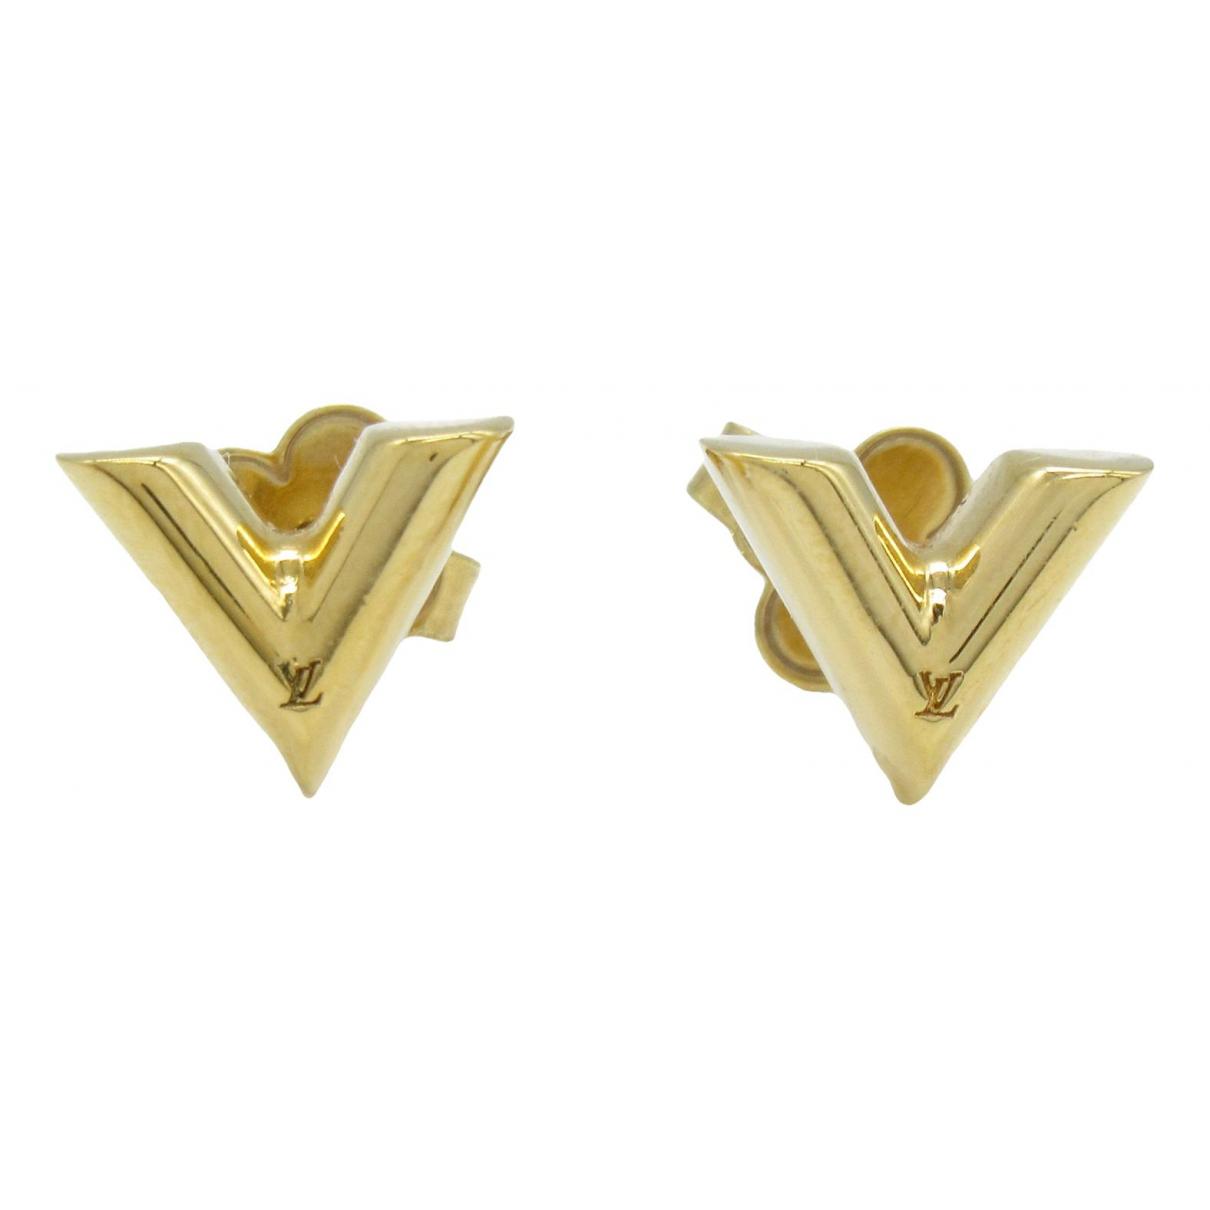 Authentic Louis Vuitton Nanogram 2D Earrings Gold Tone M00393 with Box